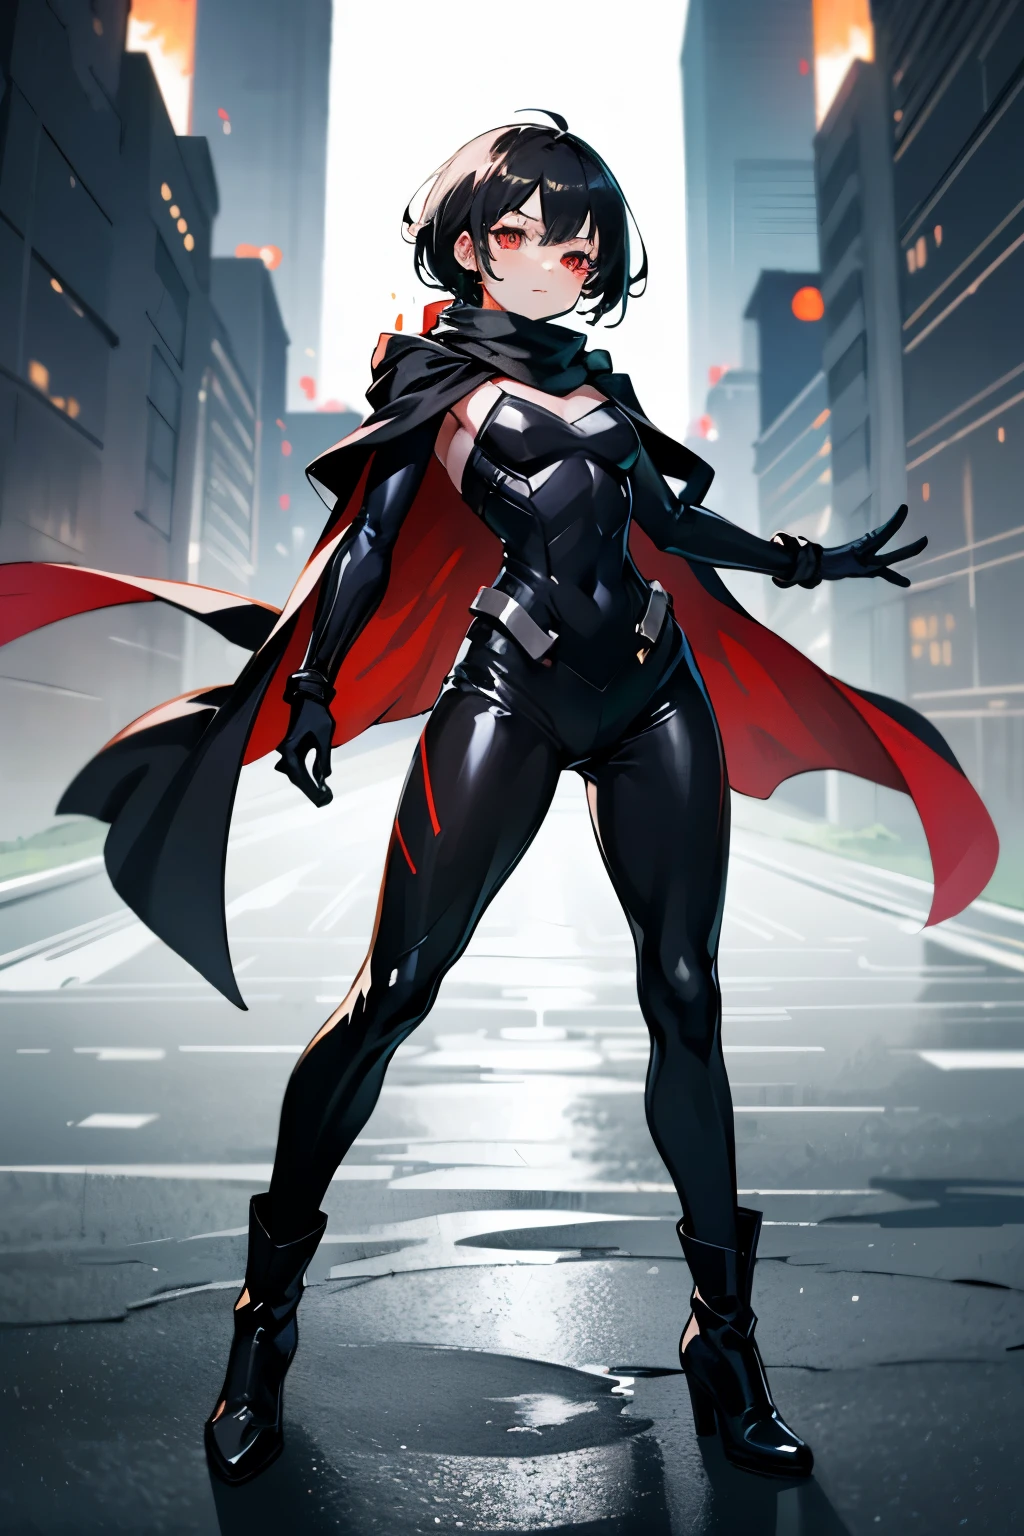 スーパーヒーローガール, 赤い目, 短い黒髪, かわいい顔, 黒いスカーフ, ブラックヒーロースーツ, 黒のロングブーツ, 黒い手袋, 手の中の赤い魔法の力, 全身写真:1.5,